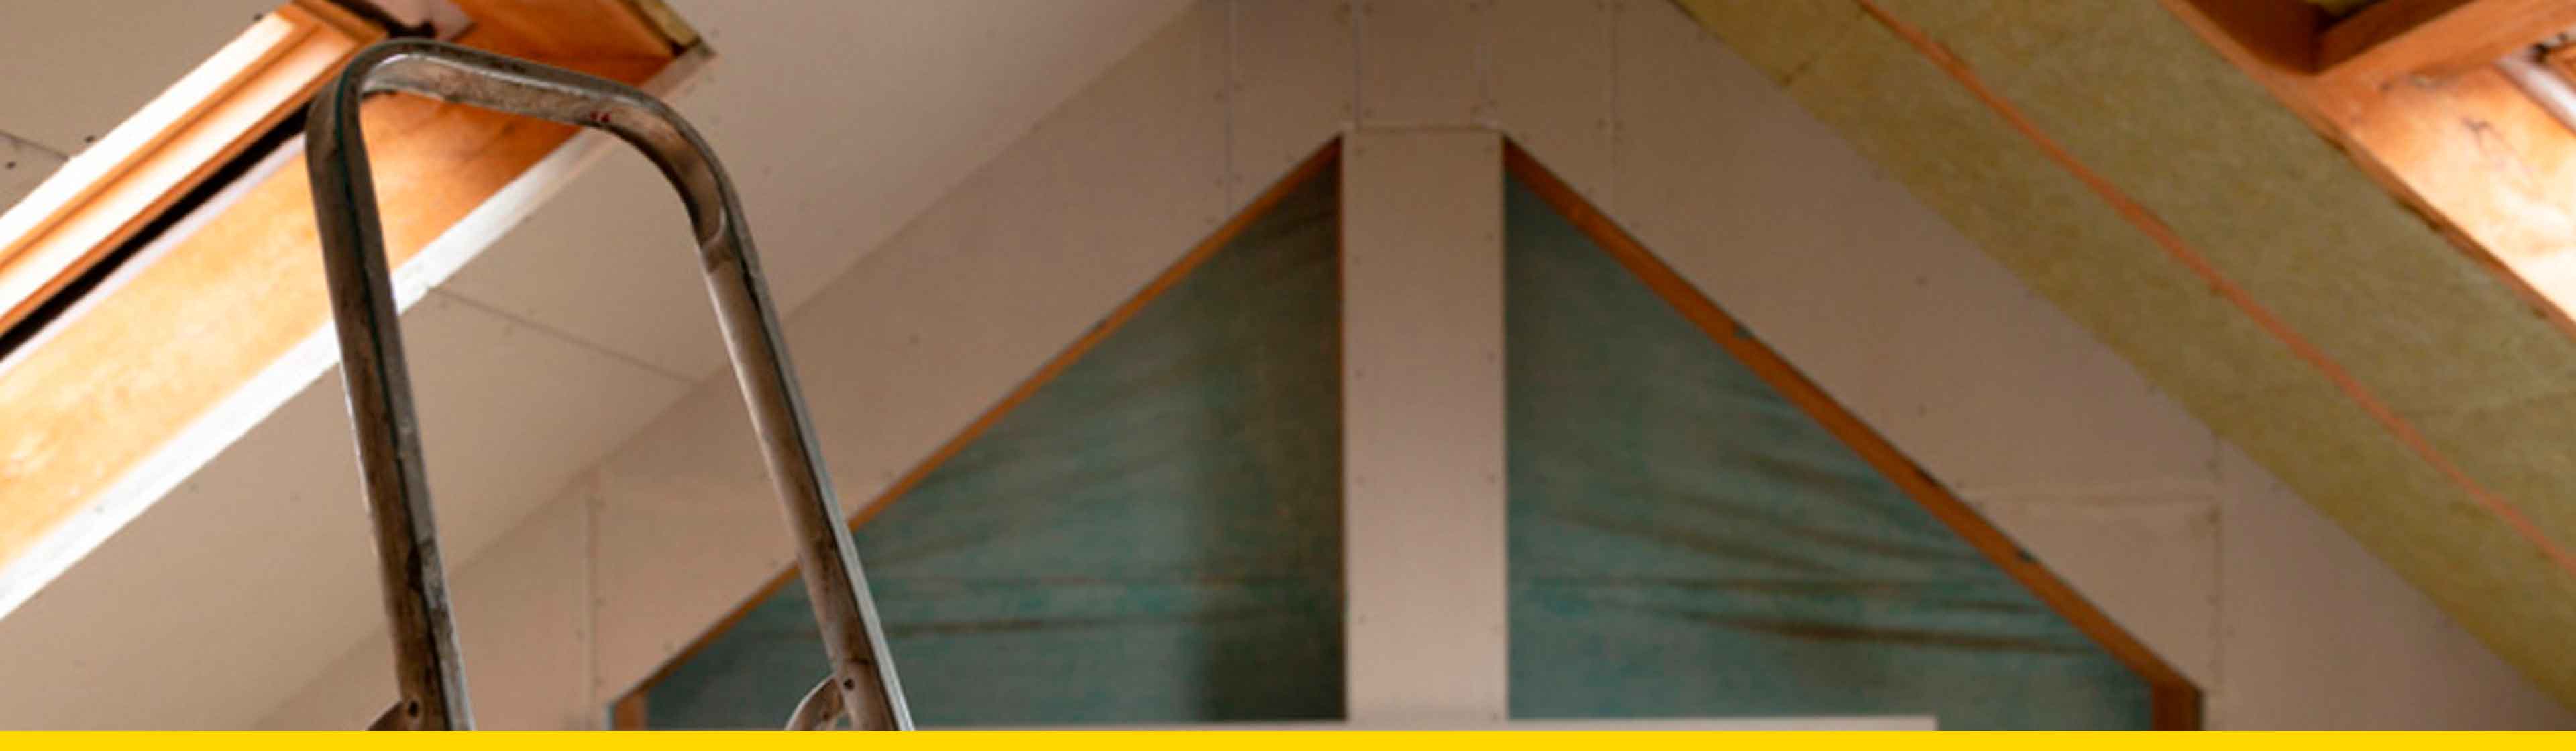 8 usos y formas de usar drywall en la construcción